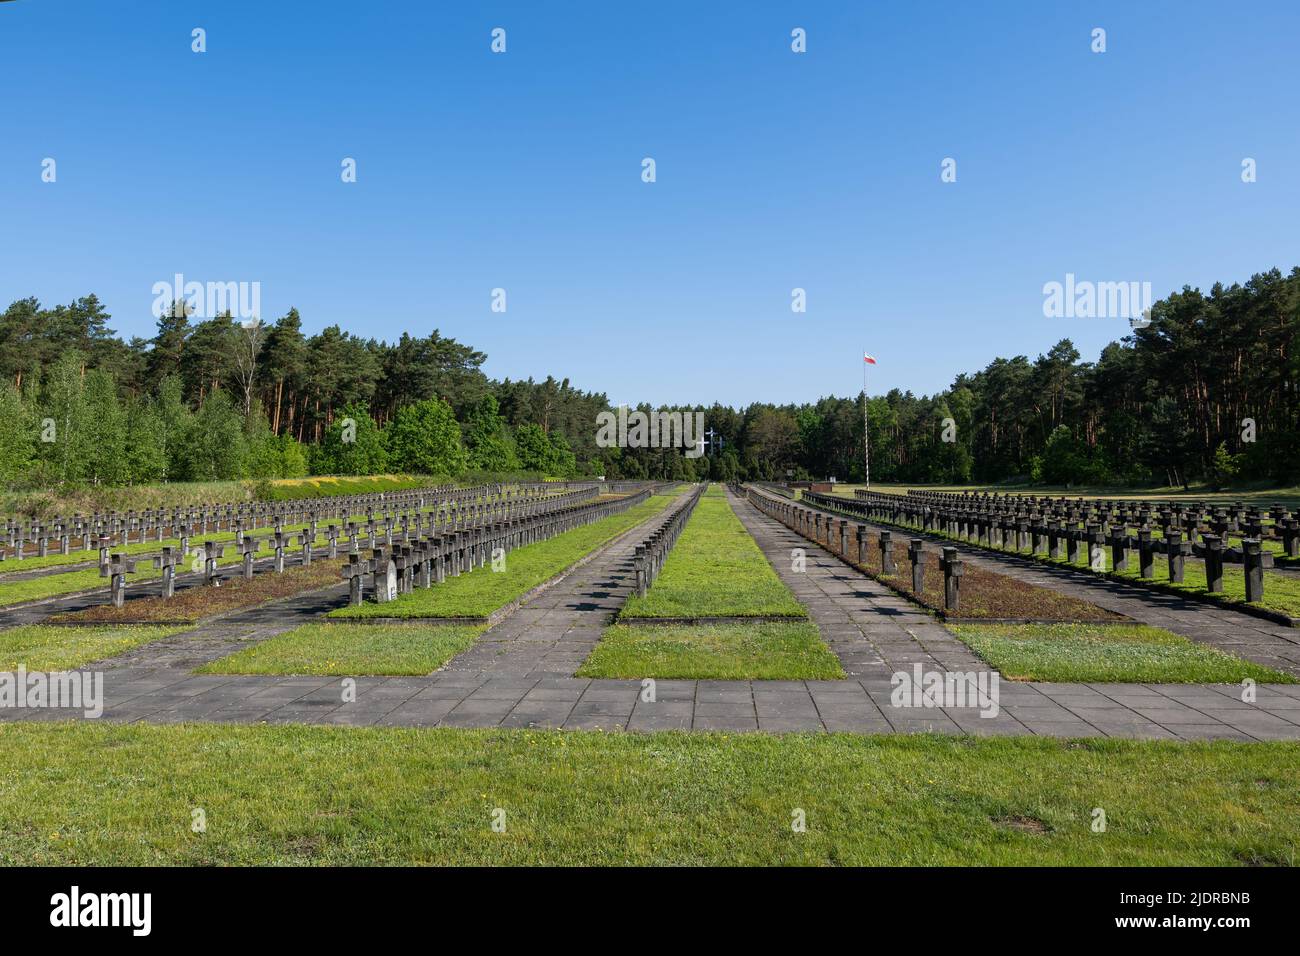 Forêt de Kampinos, Pologne - 26 mai 2022 : cimetière de guerre Palmiry, lieu d'exécution et d'enterrement de plus de 2 mille Polonais, victimes de la terrasse nazie allemande Banque D'Images